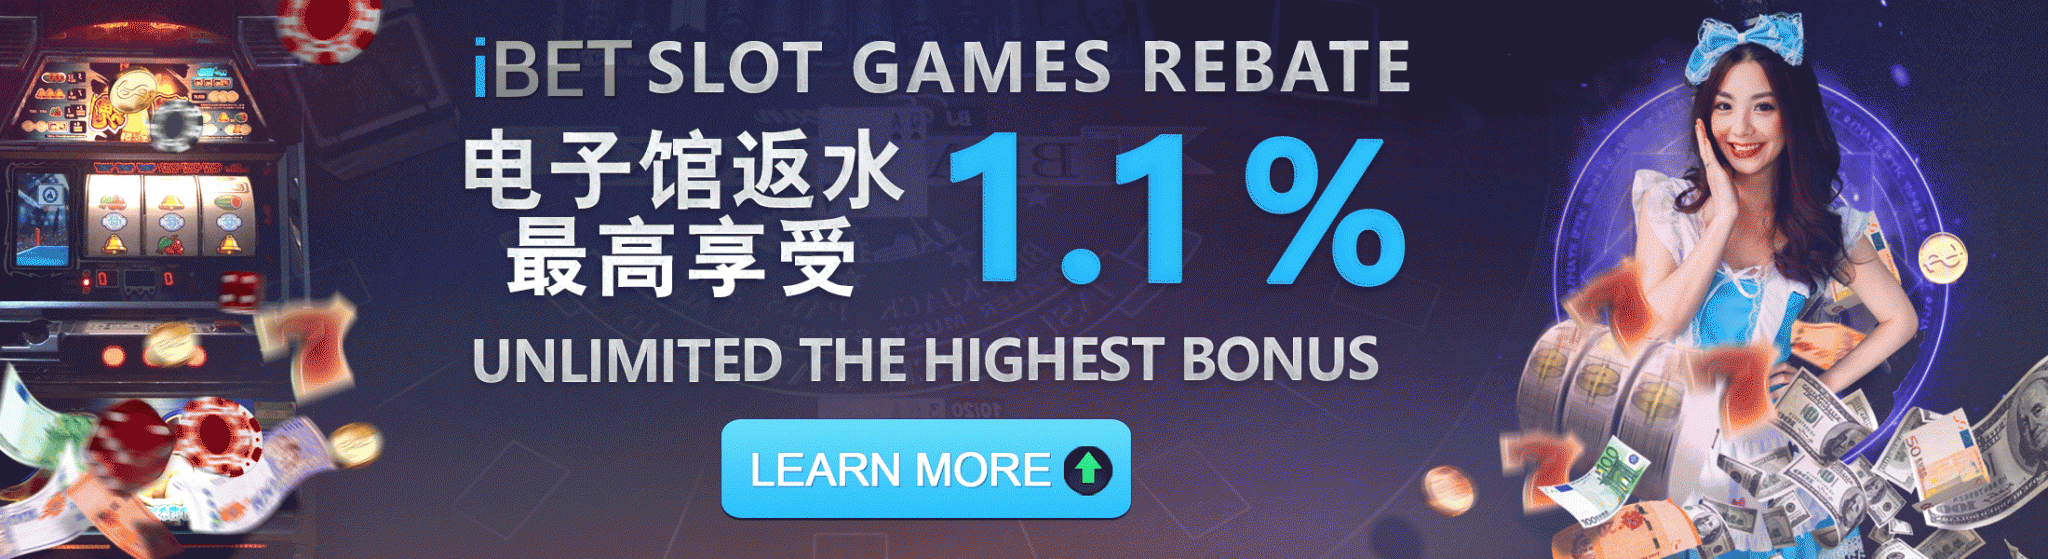 Scr888 Slot Games Rebate 1.1% Unlimited Bonus